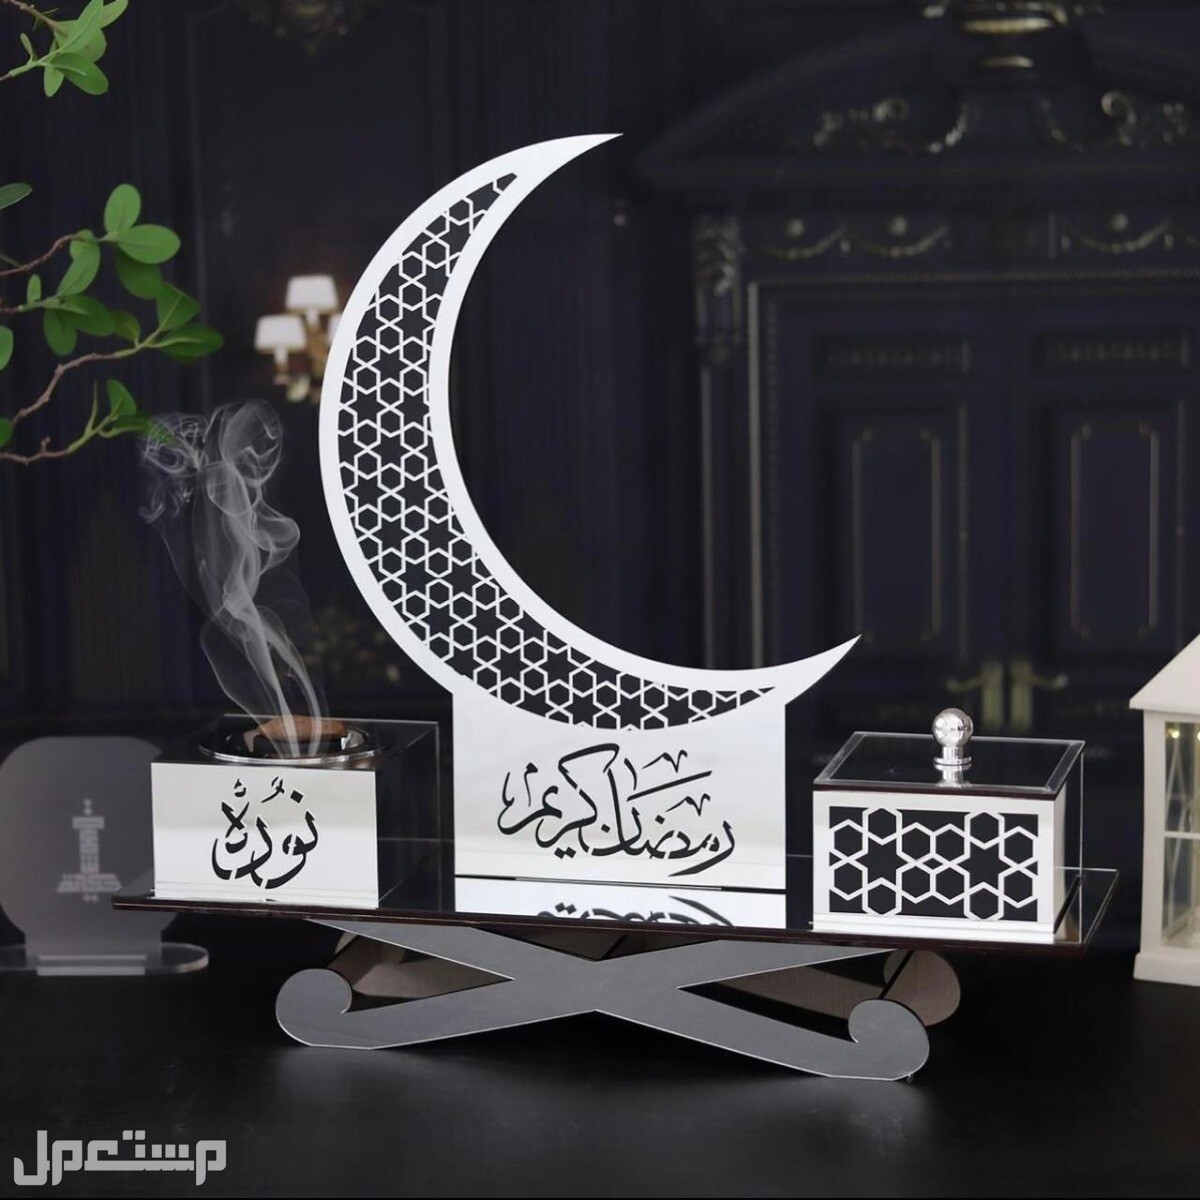 مبخرة فاخرة تستخدم لجميع المناسبات تحتوي ع هلال رمضان بزخارف اسلاميه رائعه